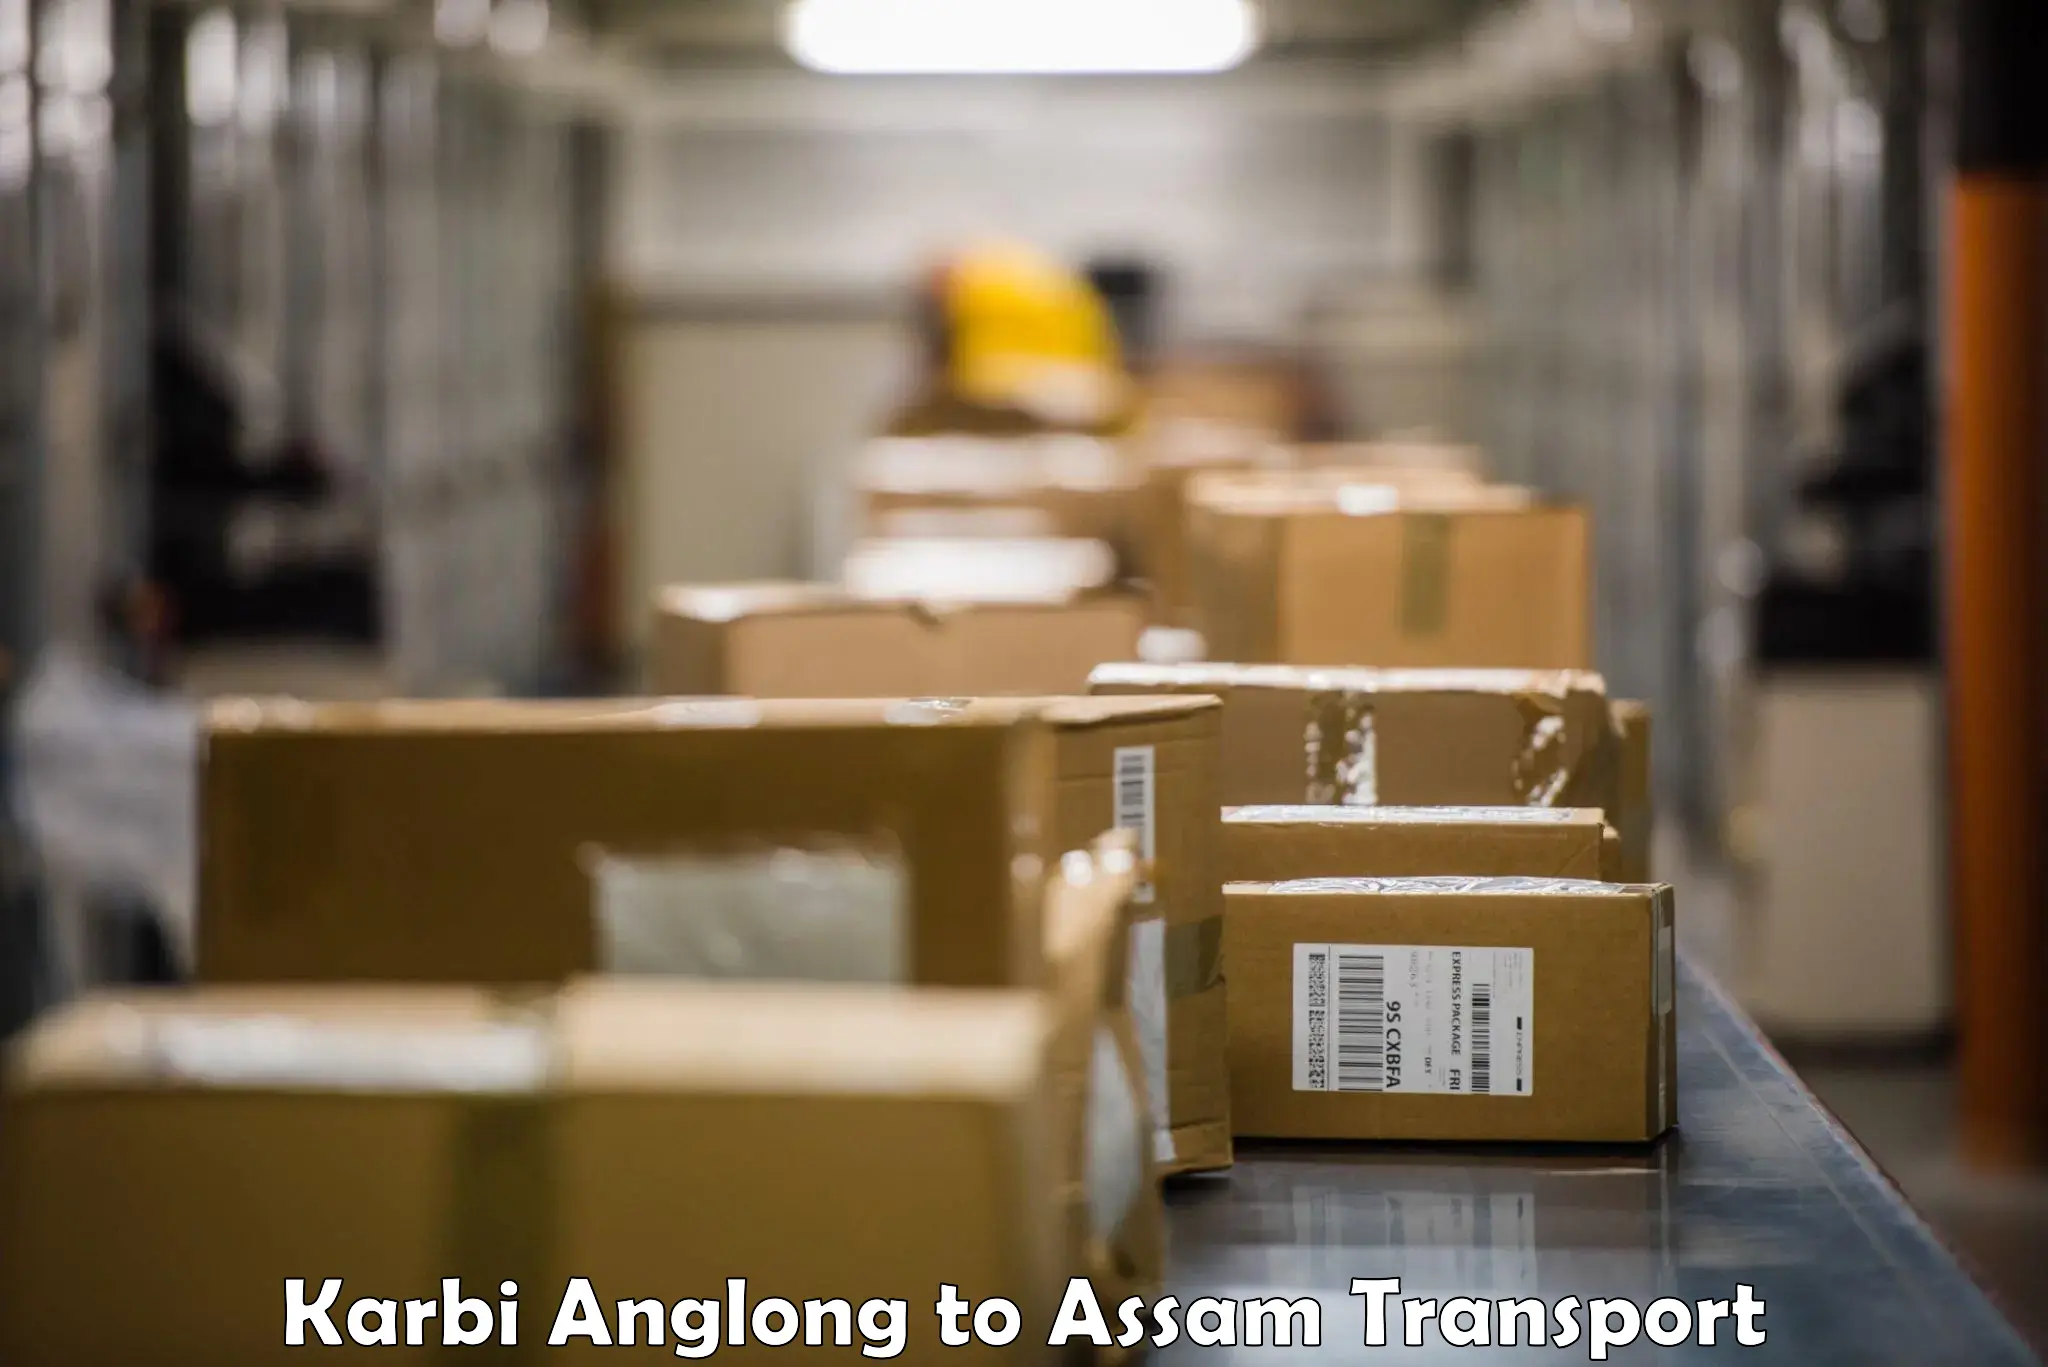 Container transport service Karbi Anglong to Bamunimaidan